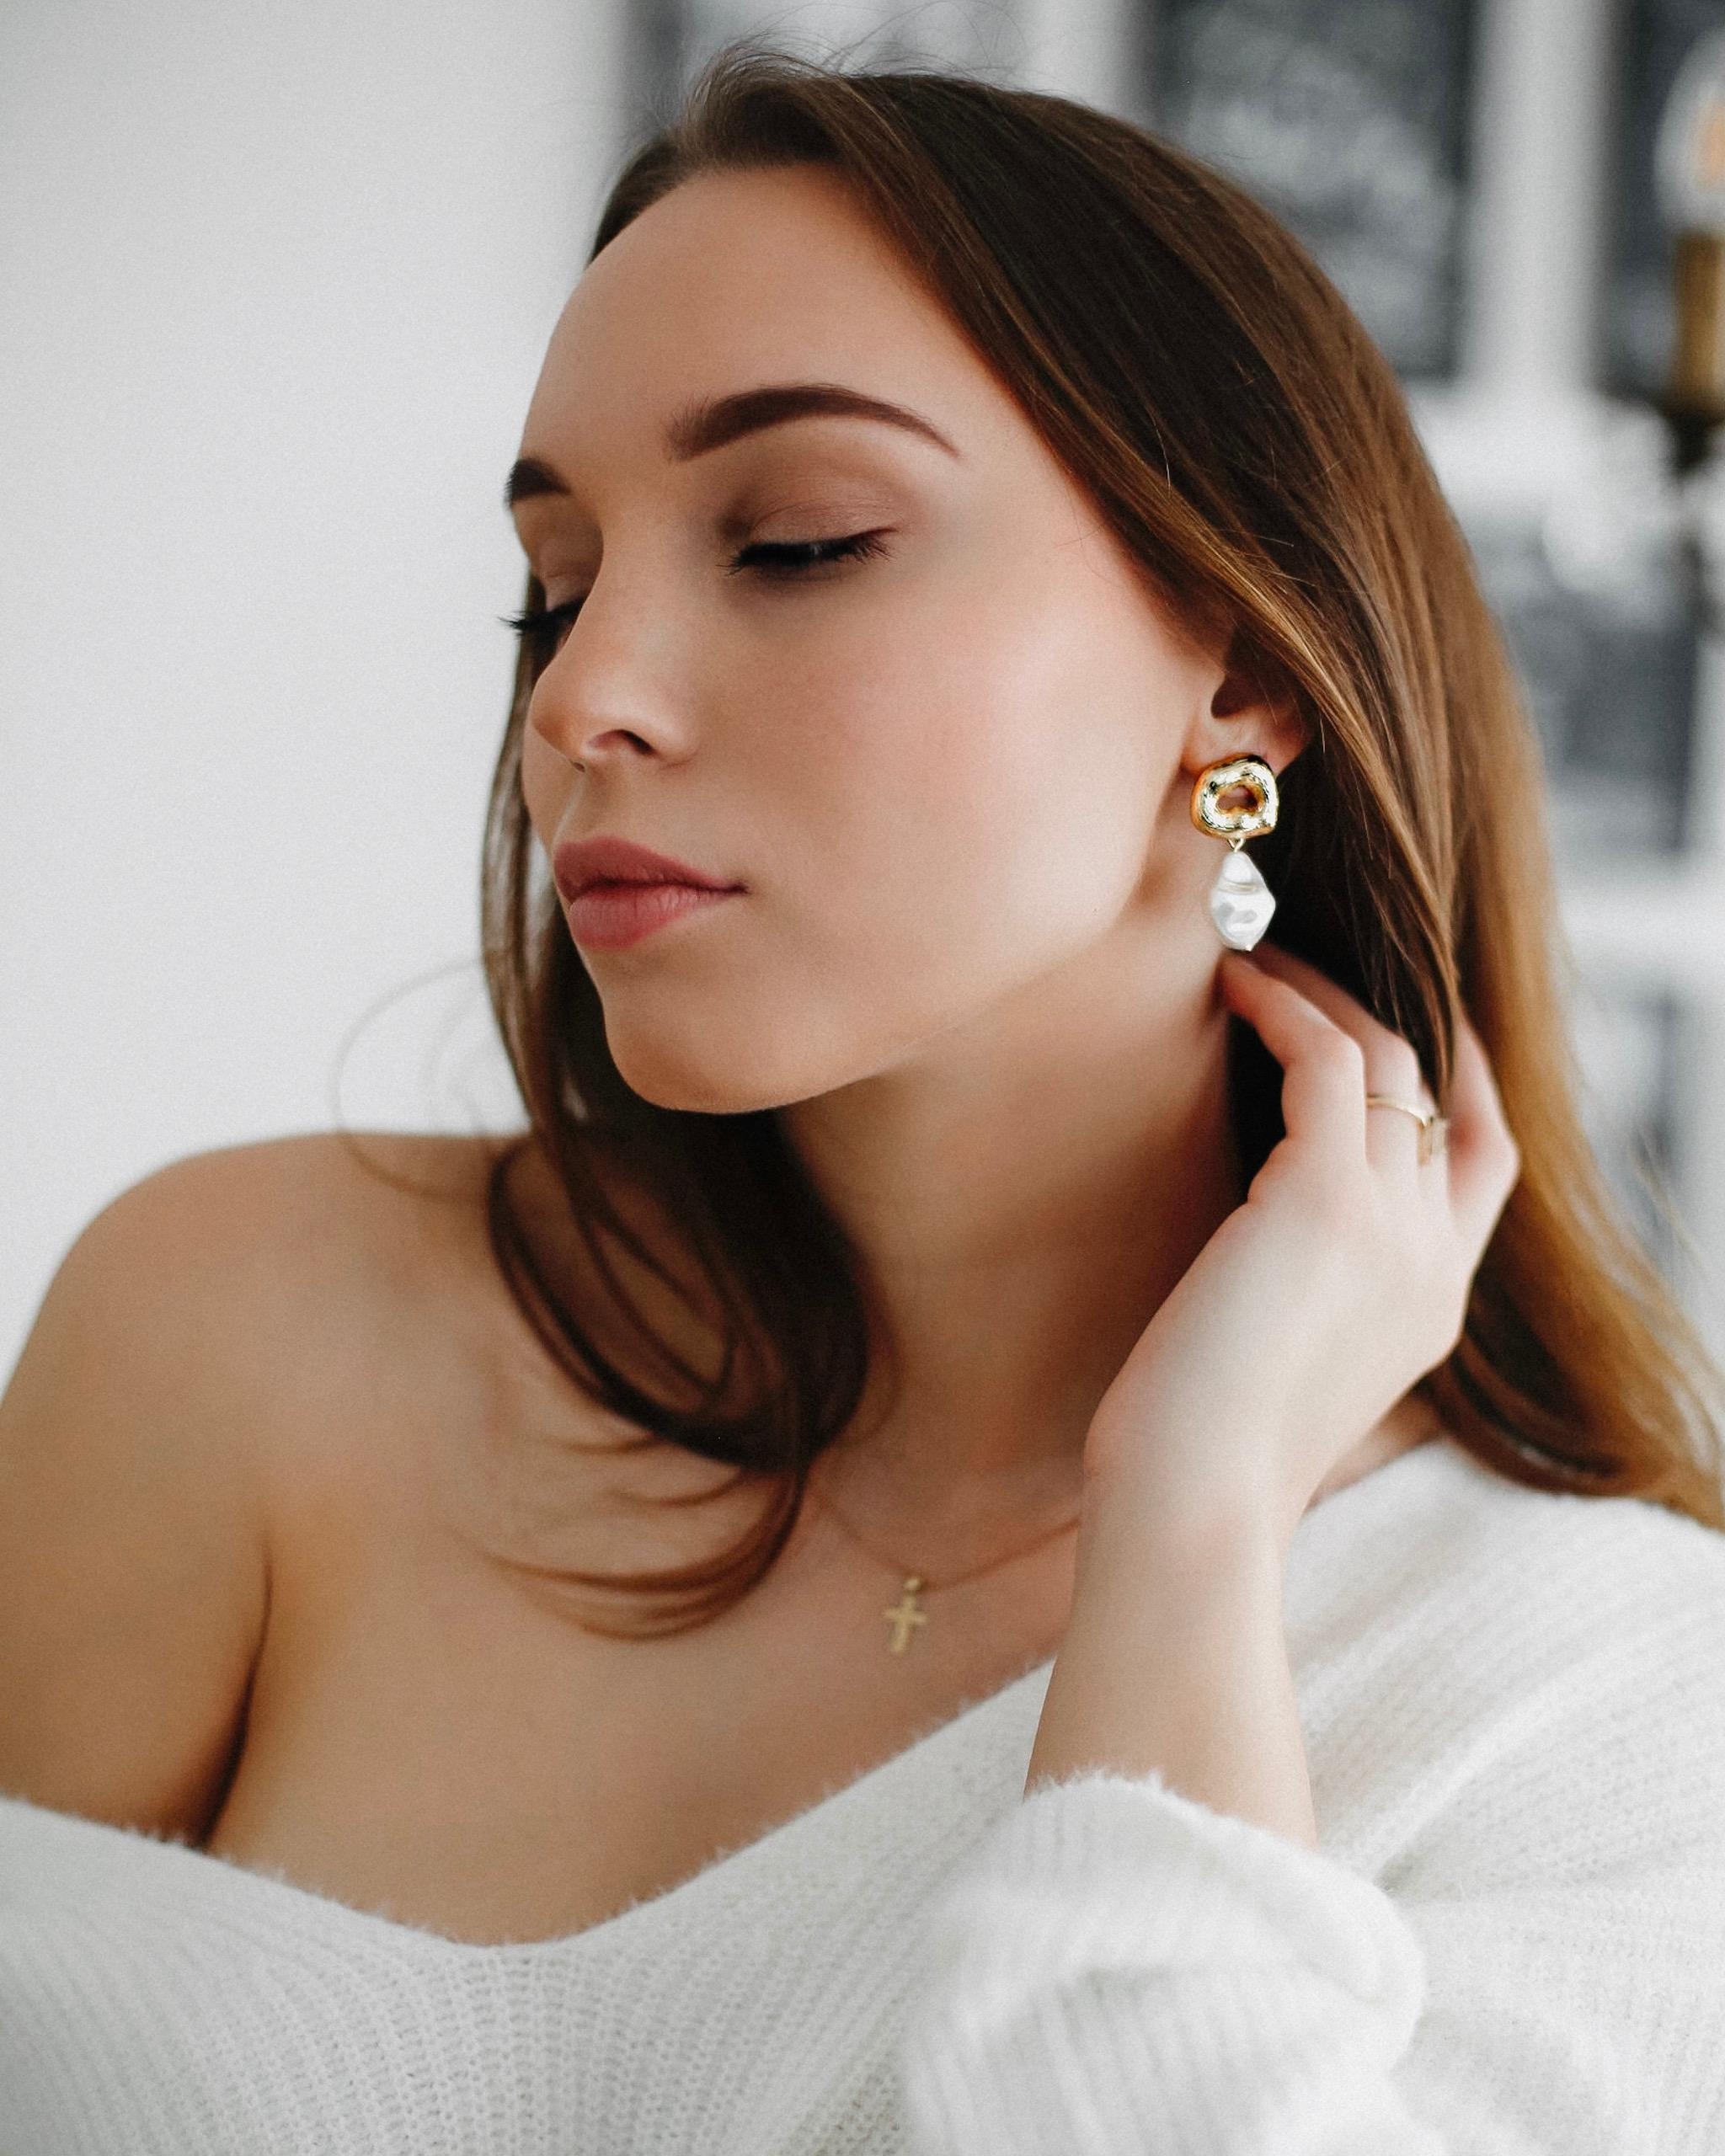 #earrings #potd #accessoires #gold #hm #portrait